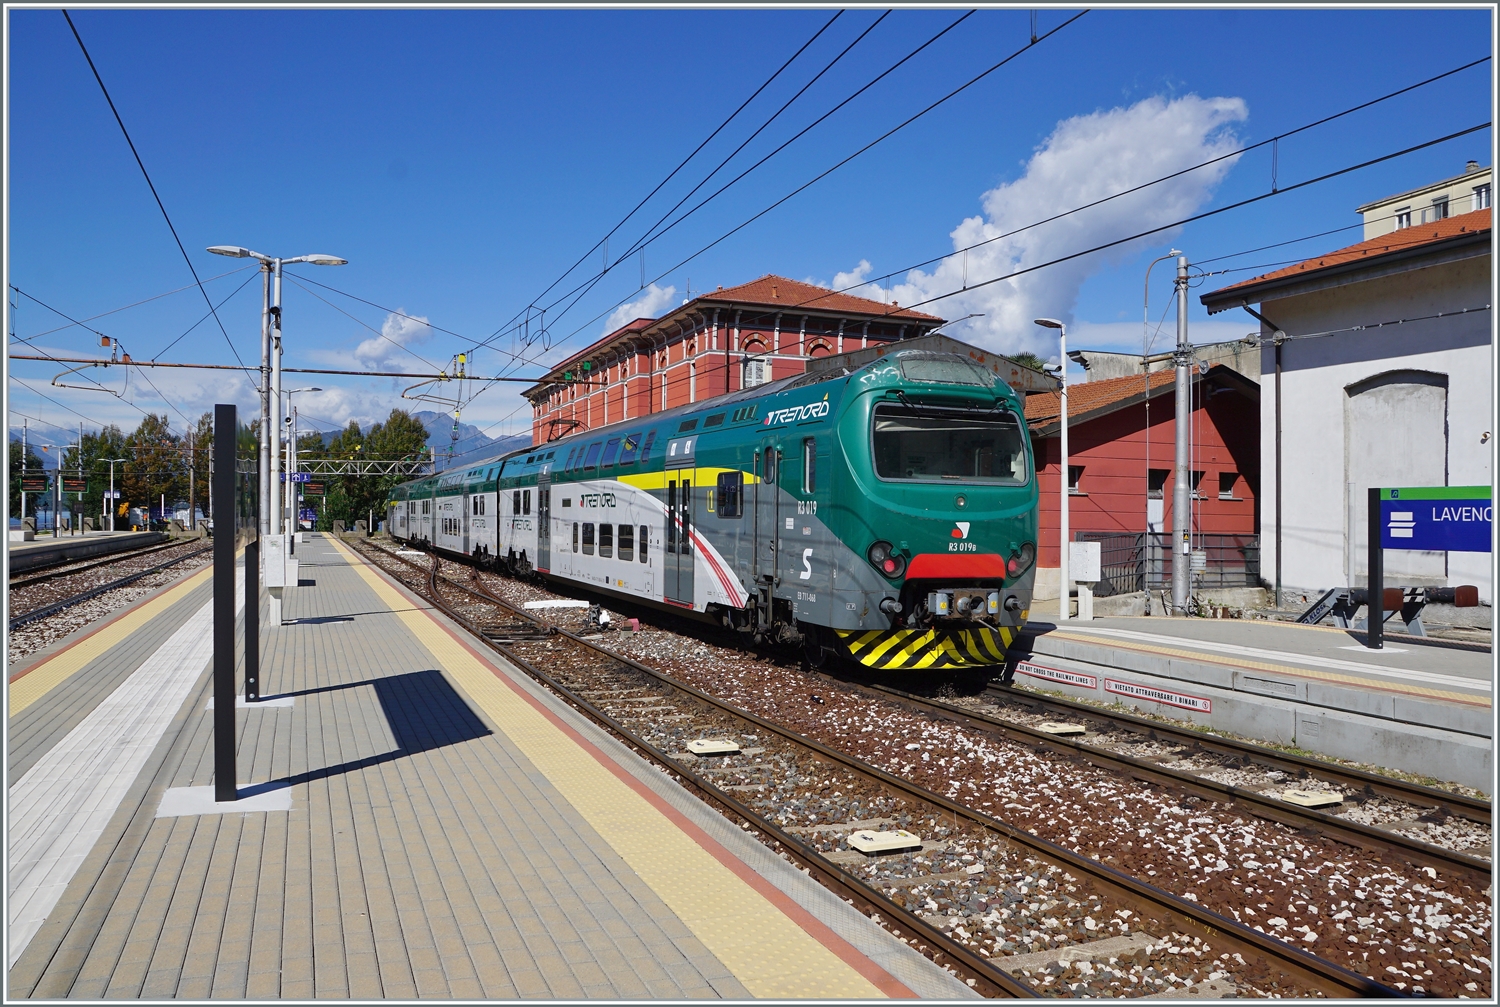 Endstation Lago Maggiore: der Trenord ALe 711 068 (94 83 4 711 068-6 I-TN) ist als Regio von Milano Cadorna in Laveno Mombello Lago angekommen.

27. September 2022